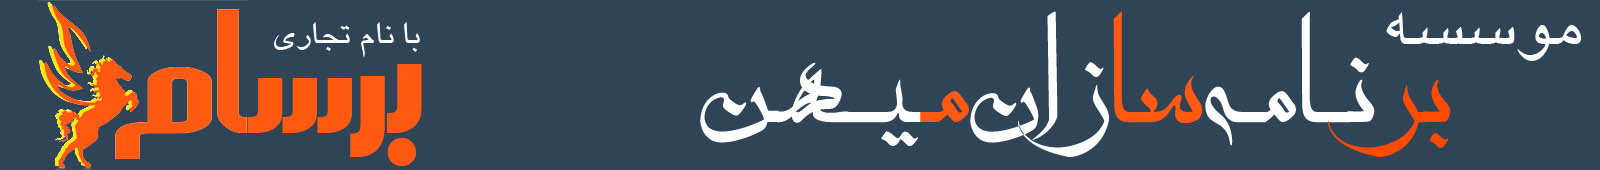 جشنواره تیونینگ – کنفرانس خبری 3 خرداد 1400